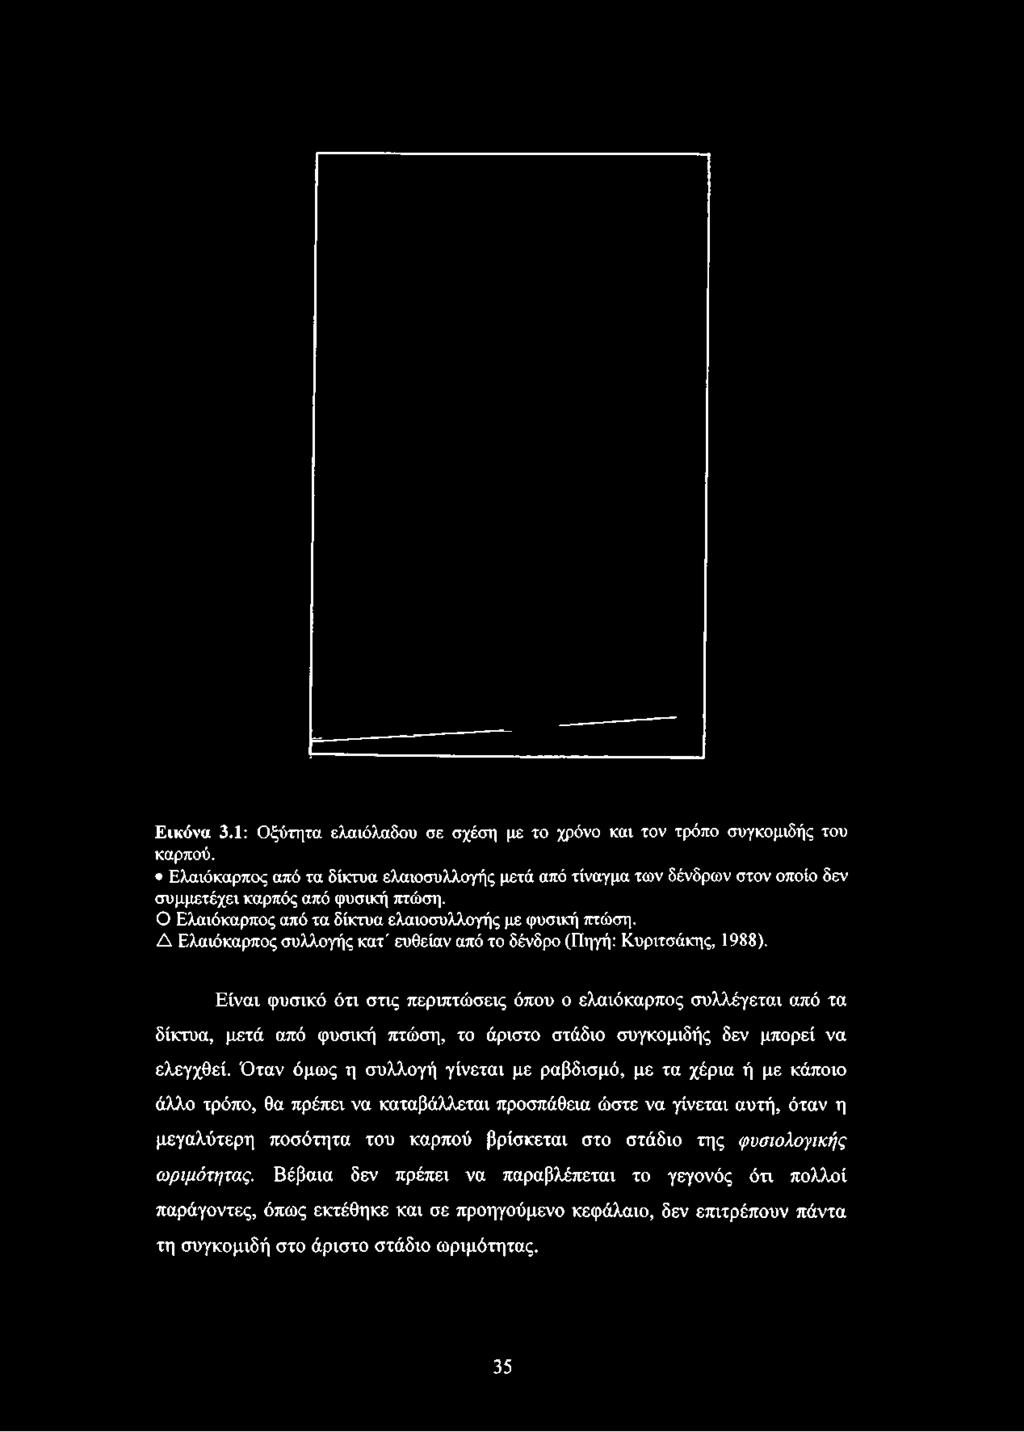 Ο Ελαιόκαρπος από τα δίκτυα ελαιοσυλλογής με φυσική πτώση. Δ Ελαιόκαρπος συλλογής κατ' ευθείαν από το δένδρο (Πηγή: Κυριτσάκης, 1988).